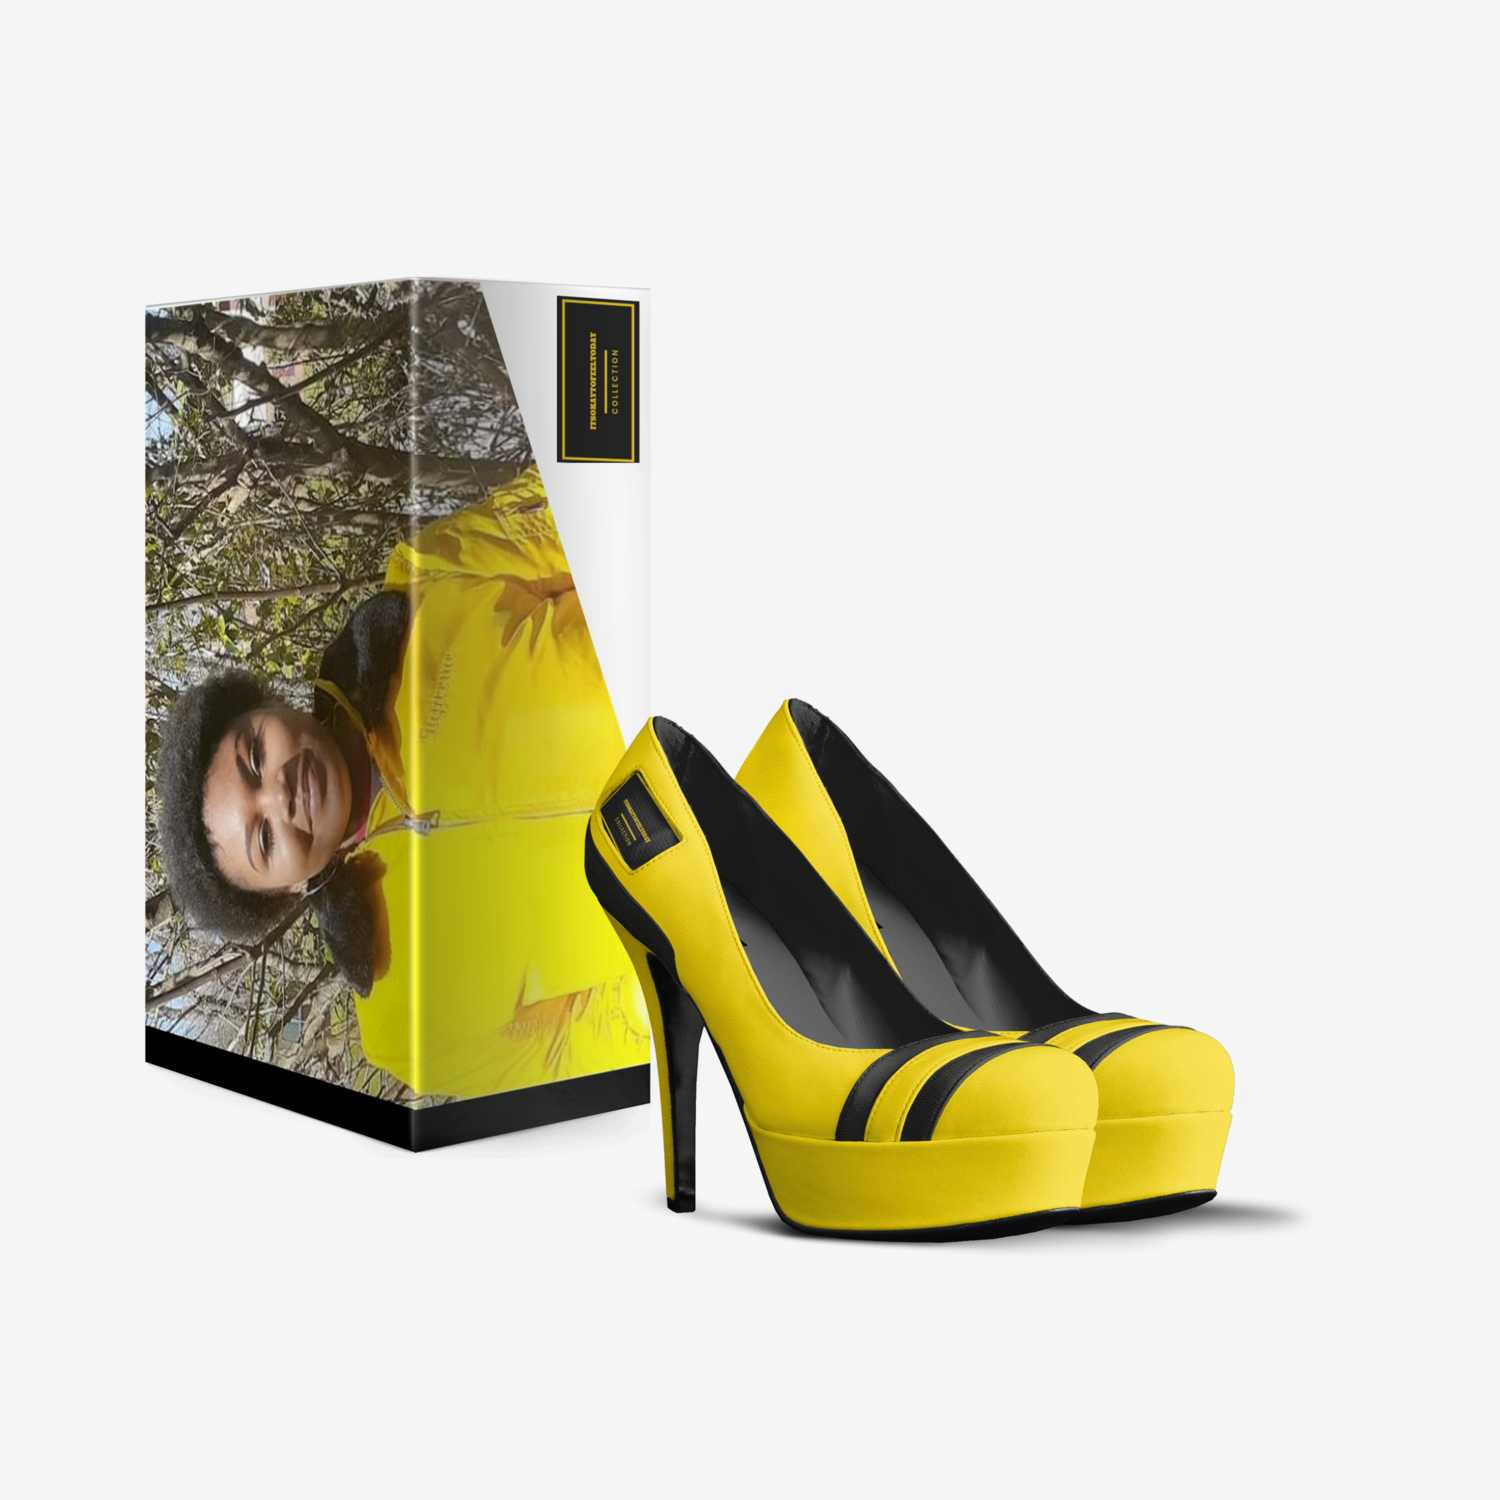 Itsokaytofeeltoday custom made in Italy shoes by Maria Hammie | Box view